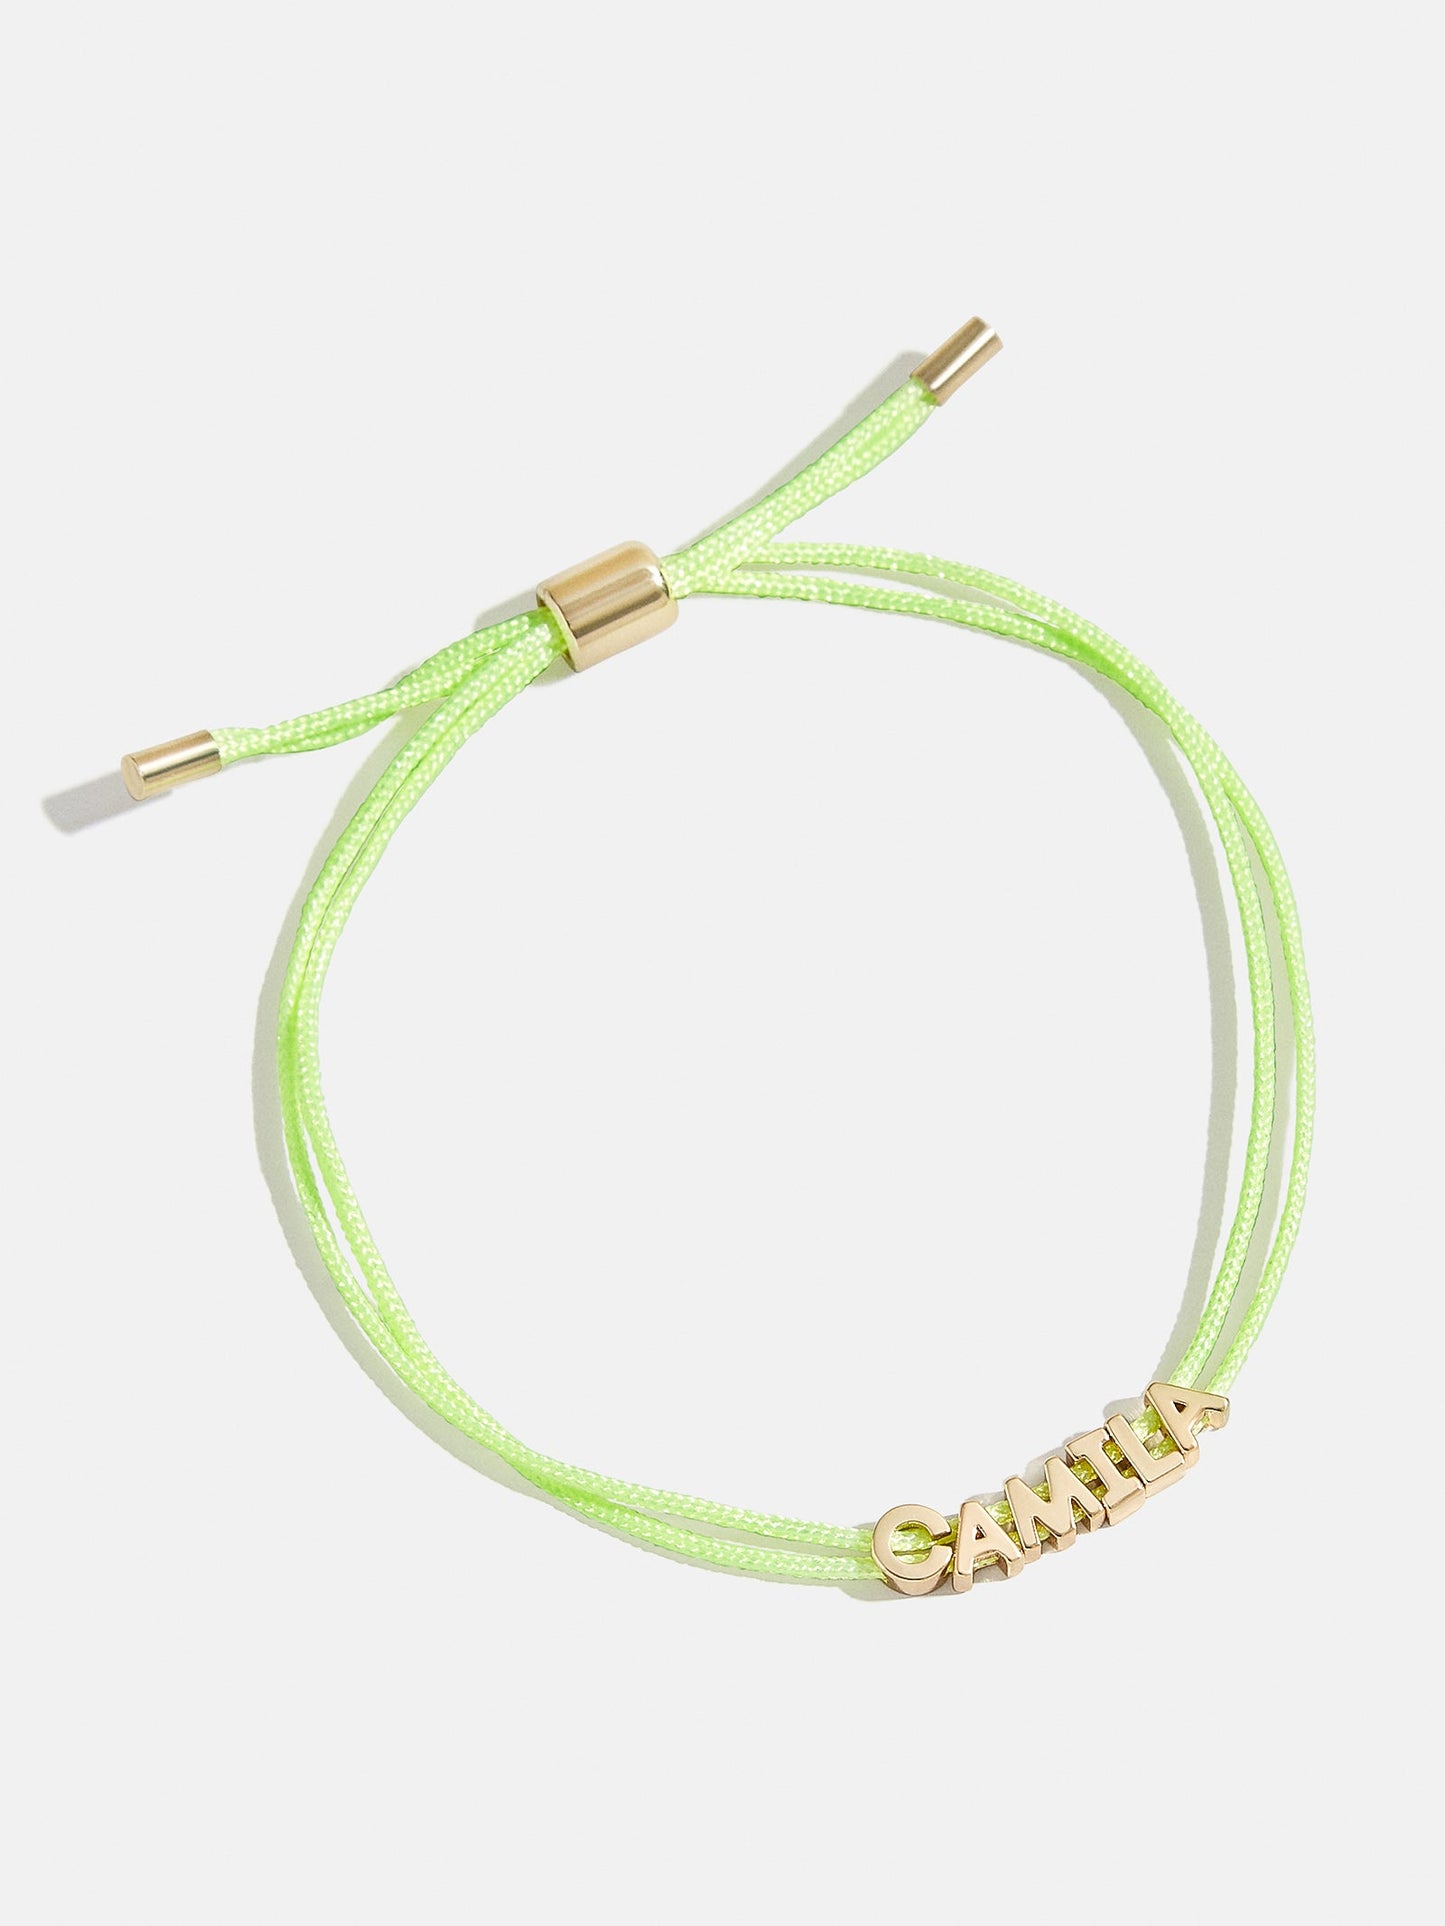 Custom Cord Bracelet - Lime